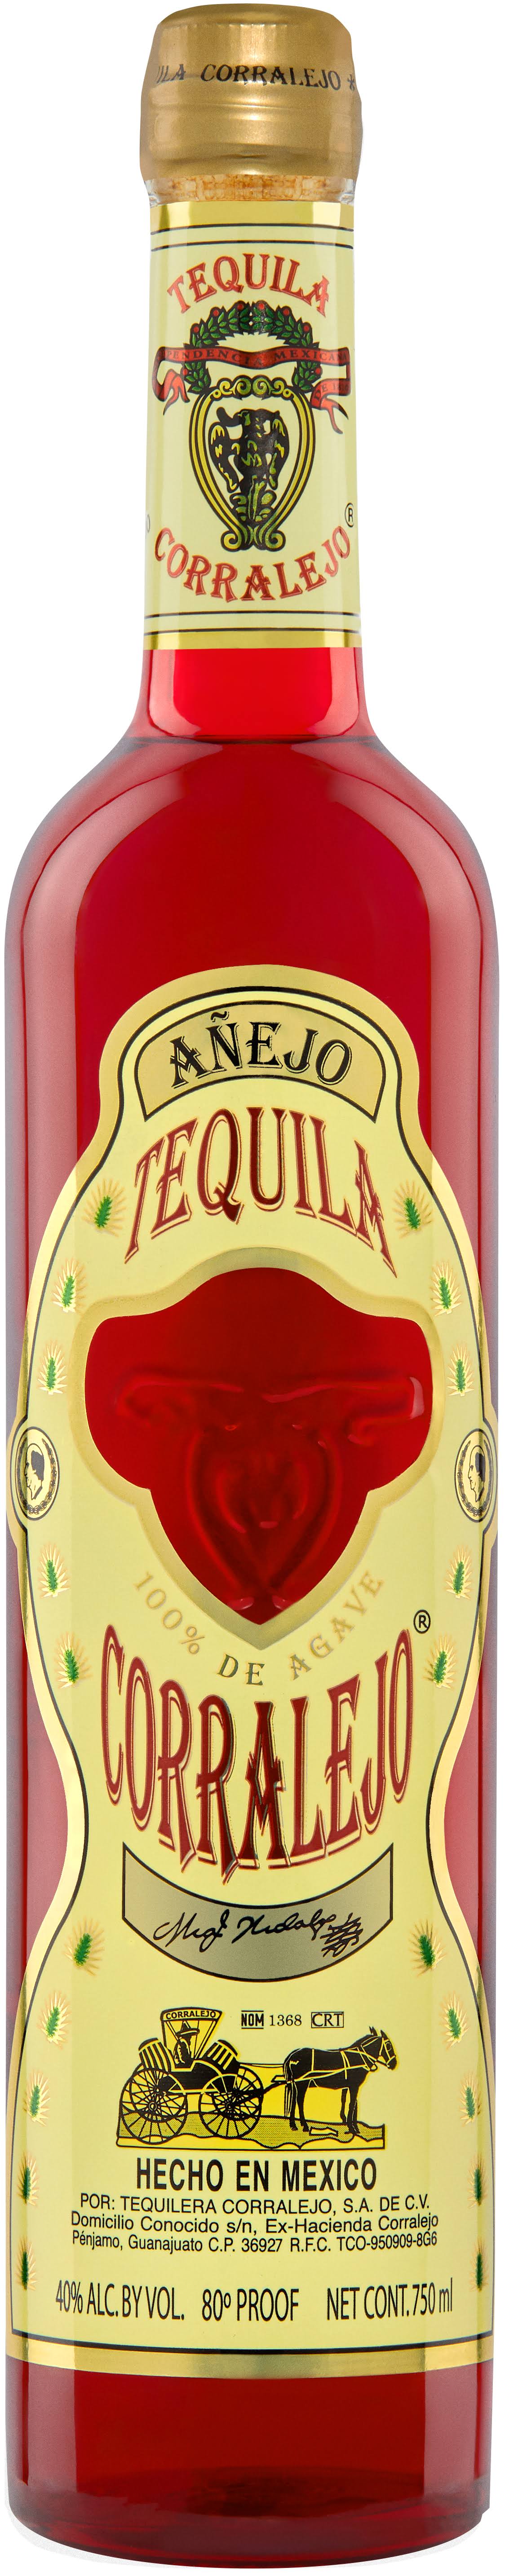 Tequila Corralejo Anejo 750ml